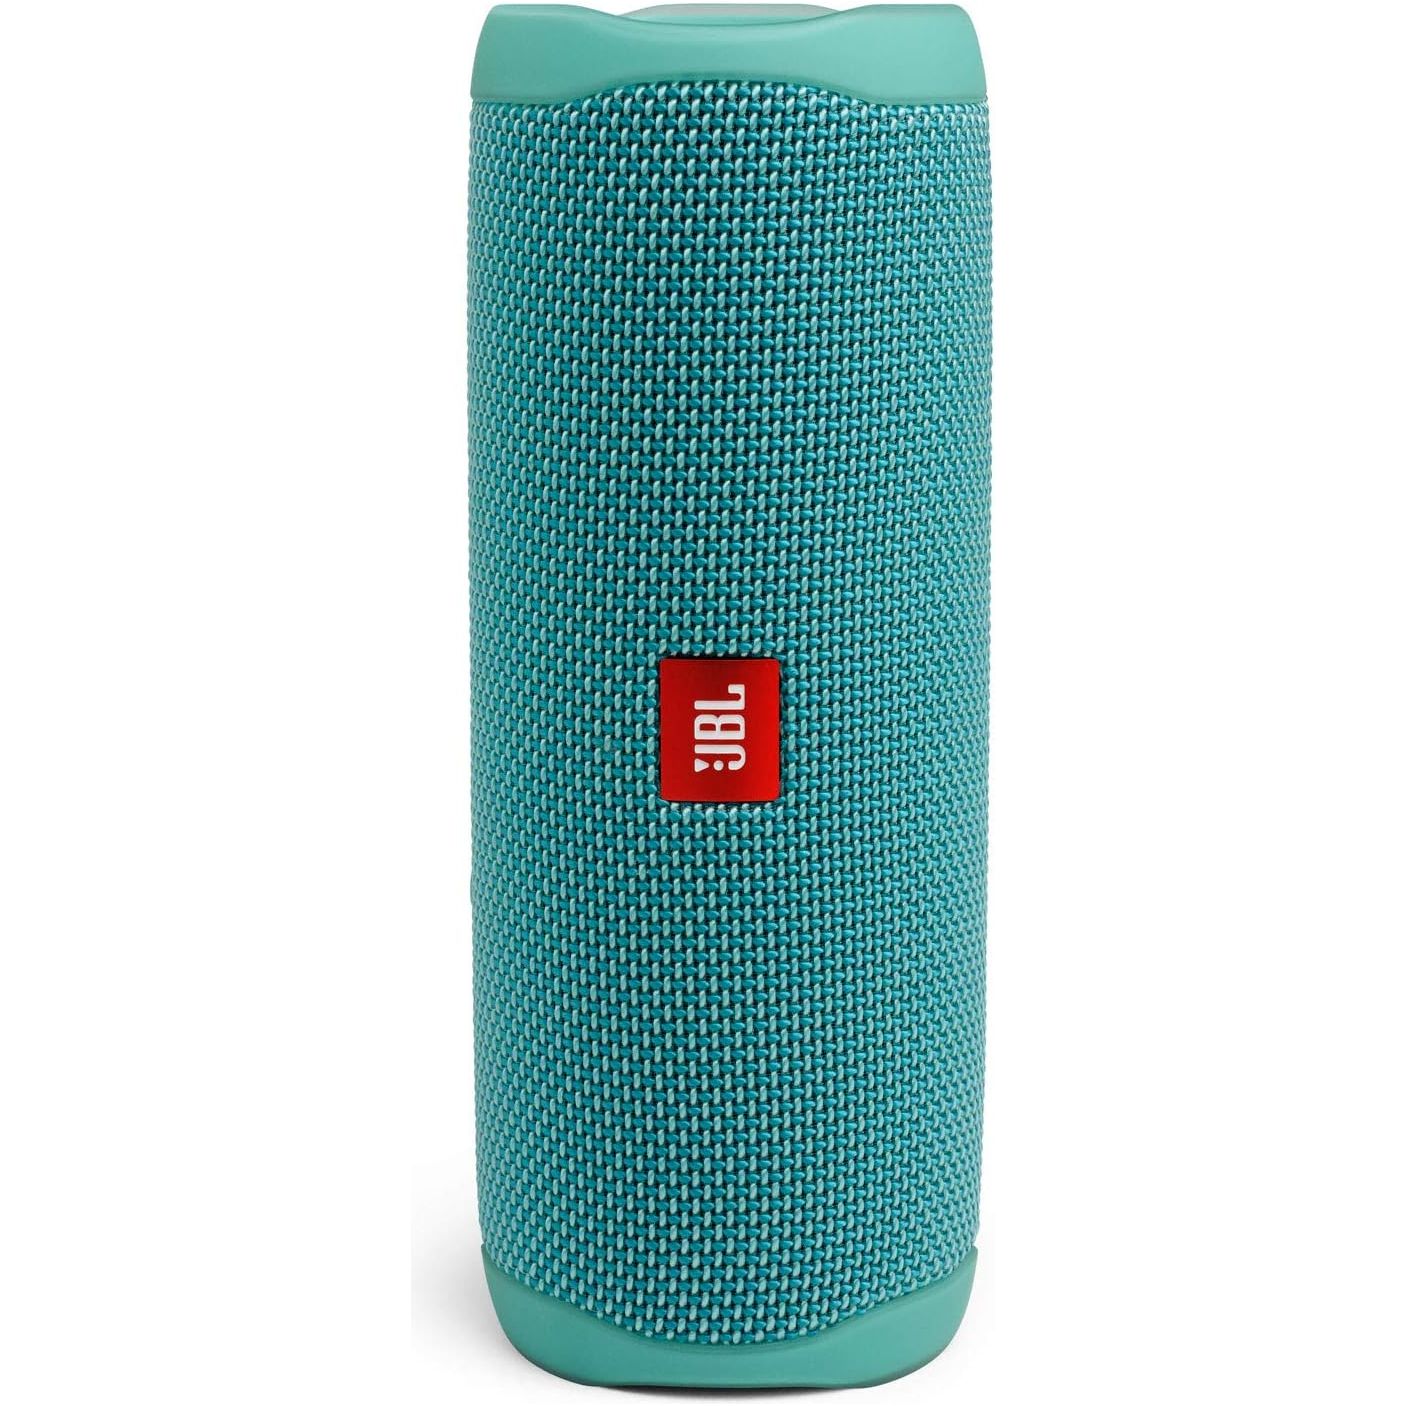 FLIP 5, Waterproof Portable Bluetooth Speaker, Teal